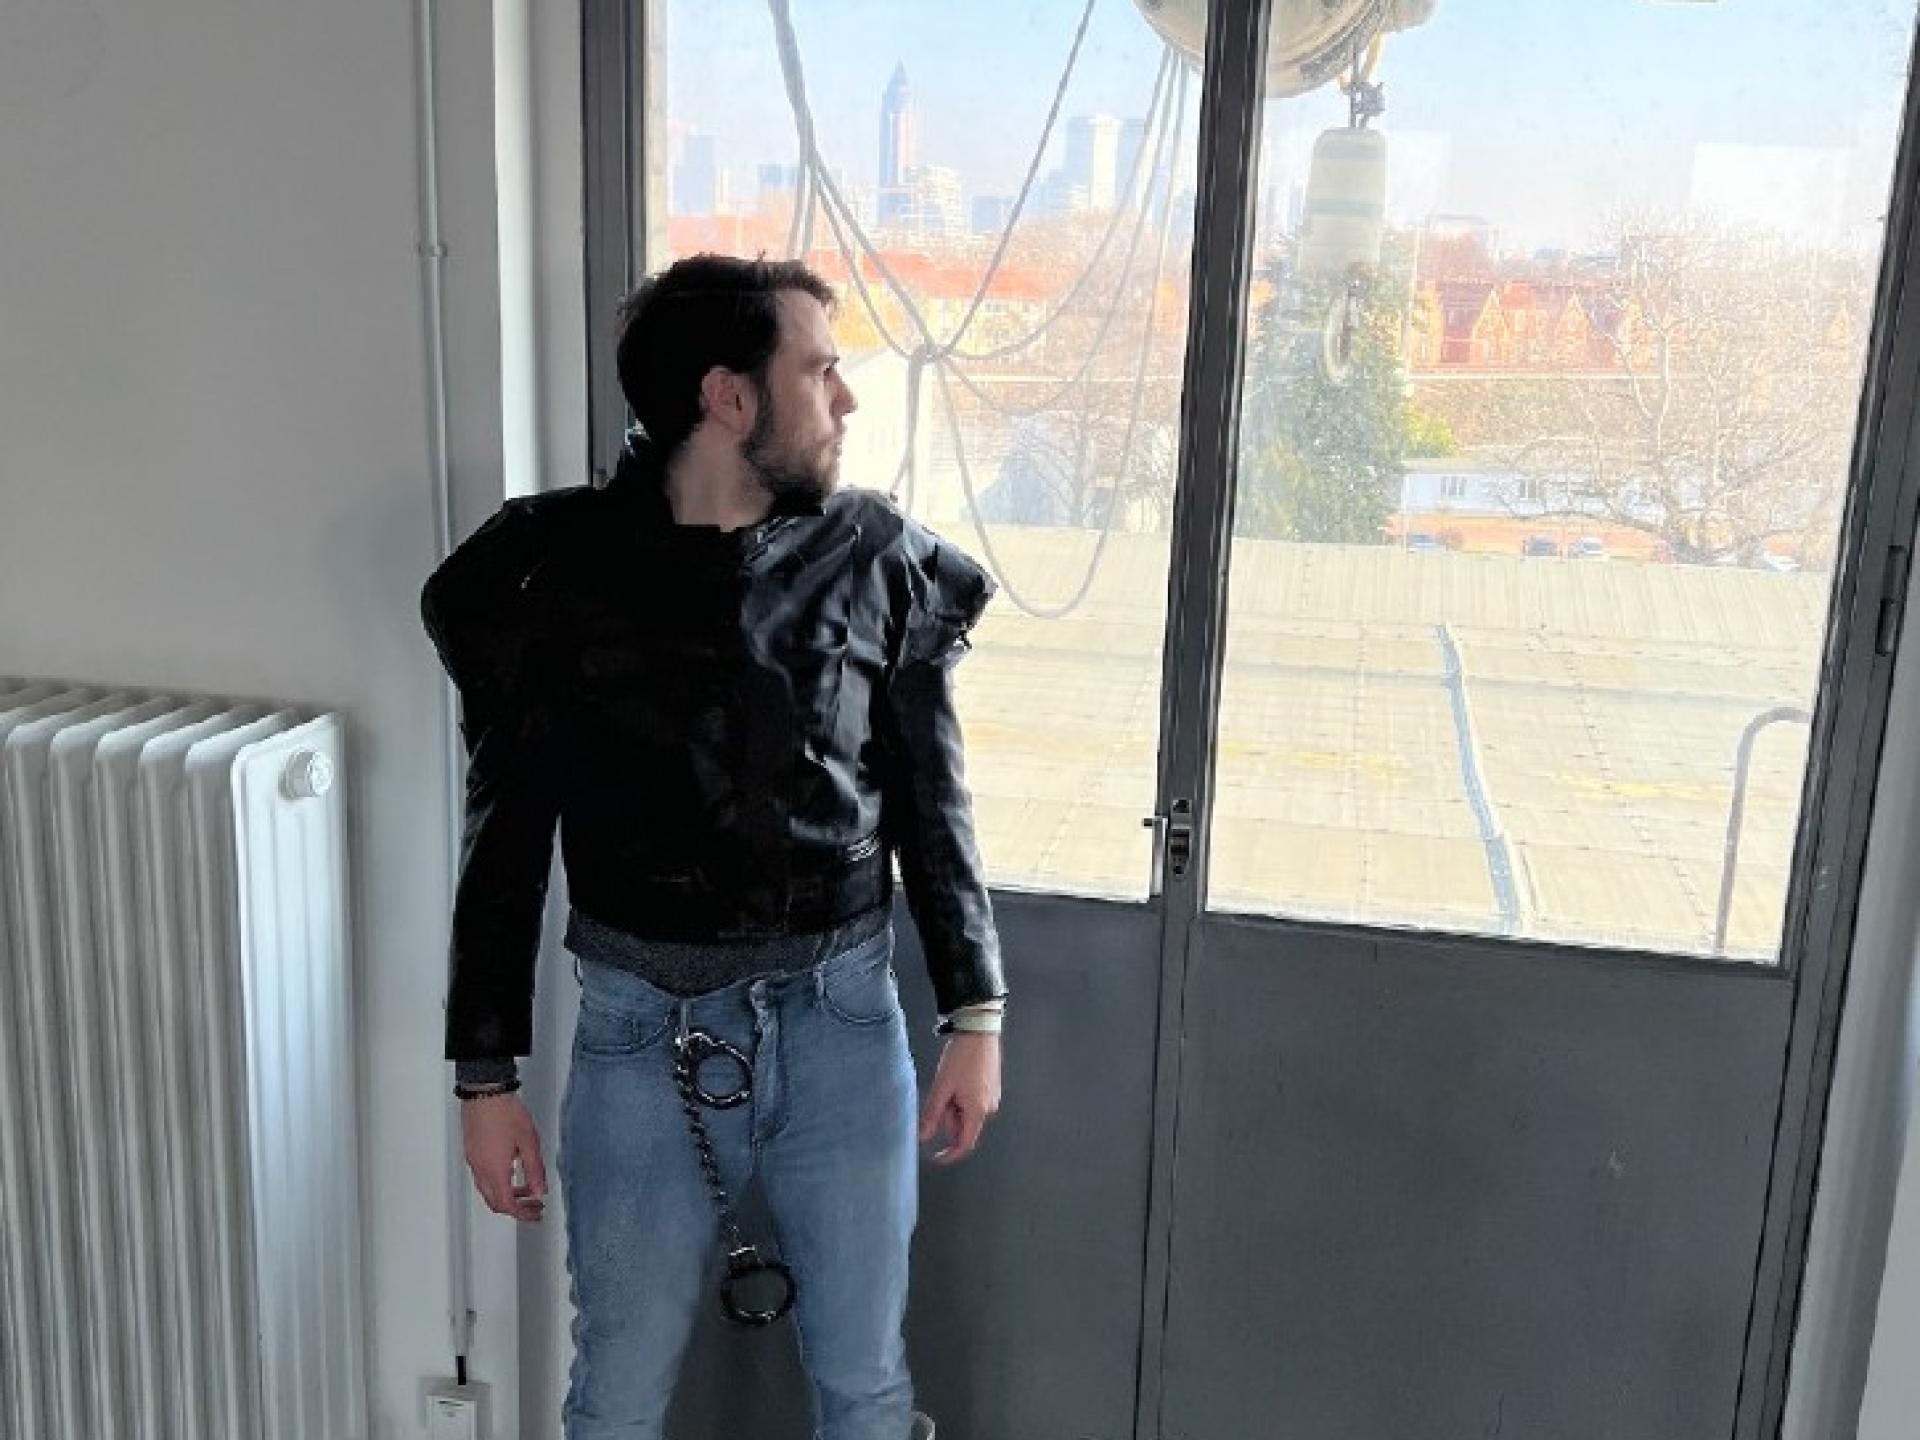 Ein Mann gekleidet in Jeans, einer kurzen schwarzen Lederjacke und weissen Gummistiefeln steht vor einem Fenster.